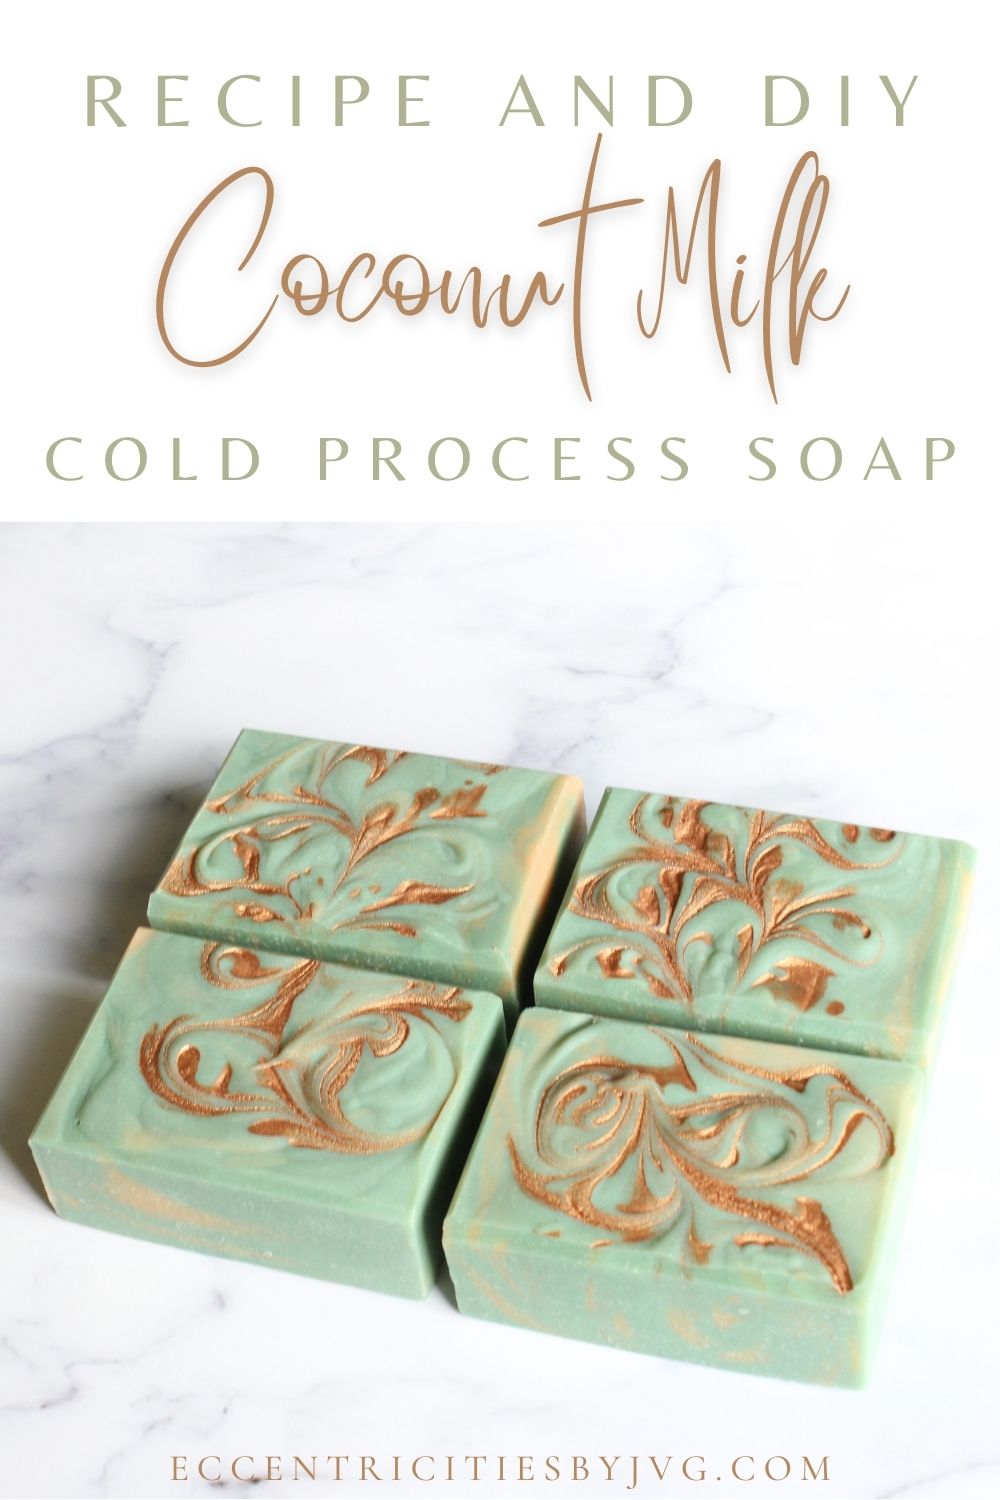 Coconut Cream Soap Recipe - Make Your Soap